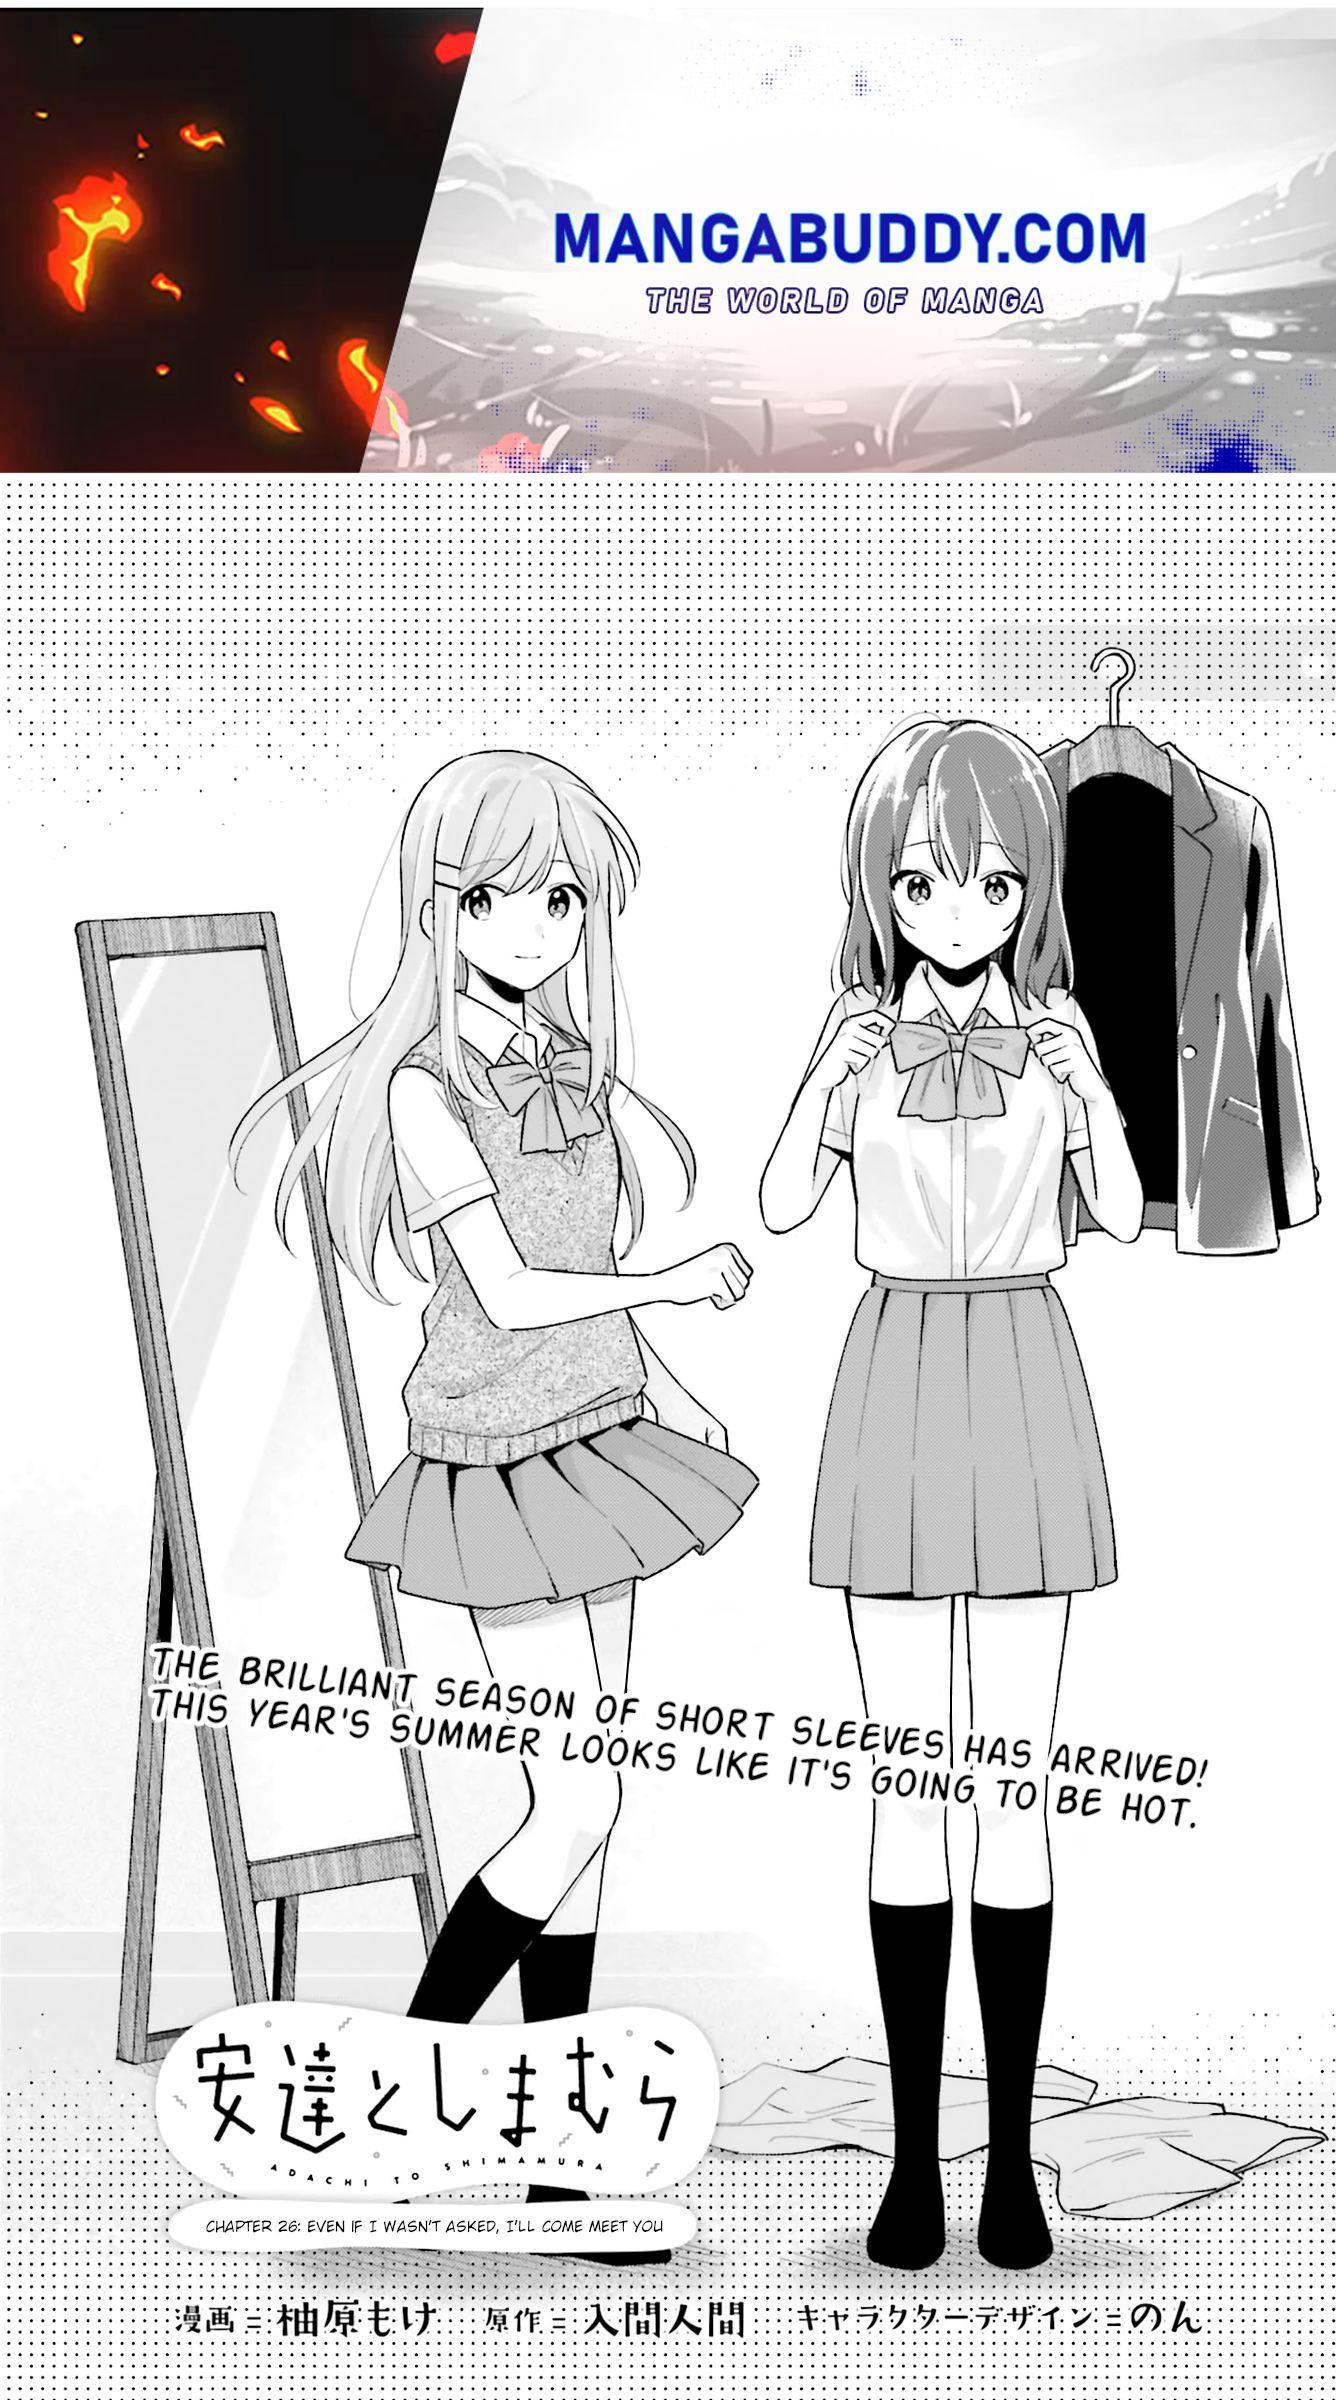 Adachi and Shimamura (Mani) Manga